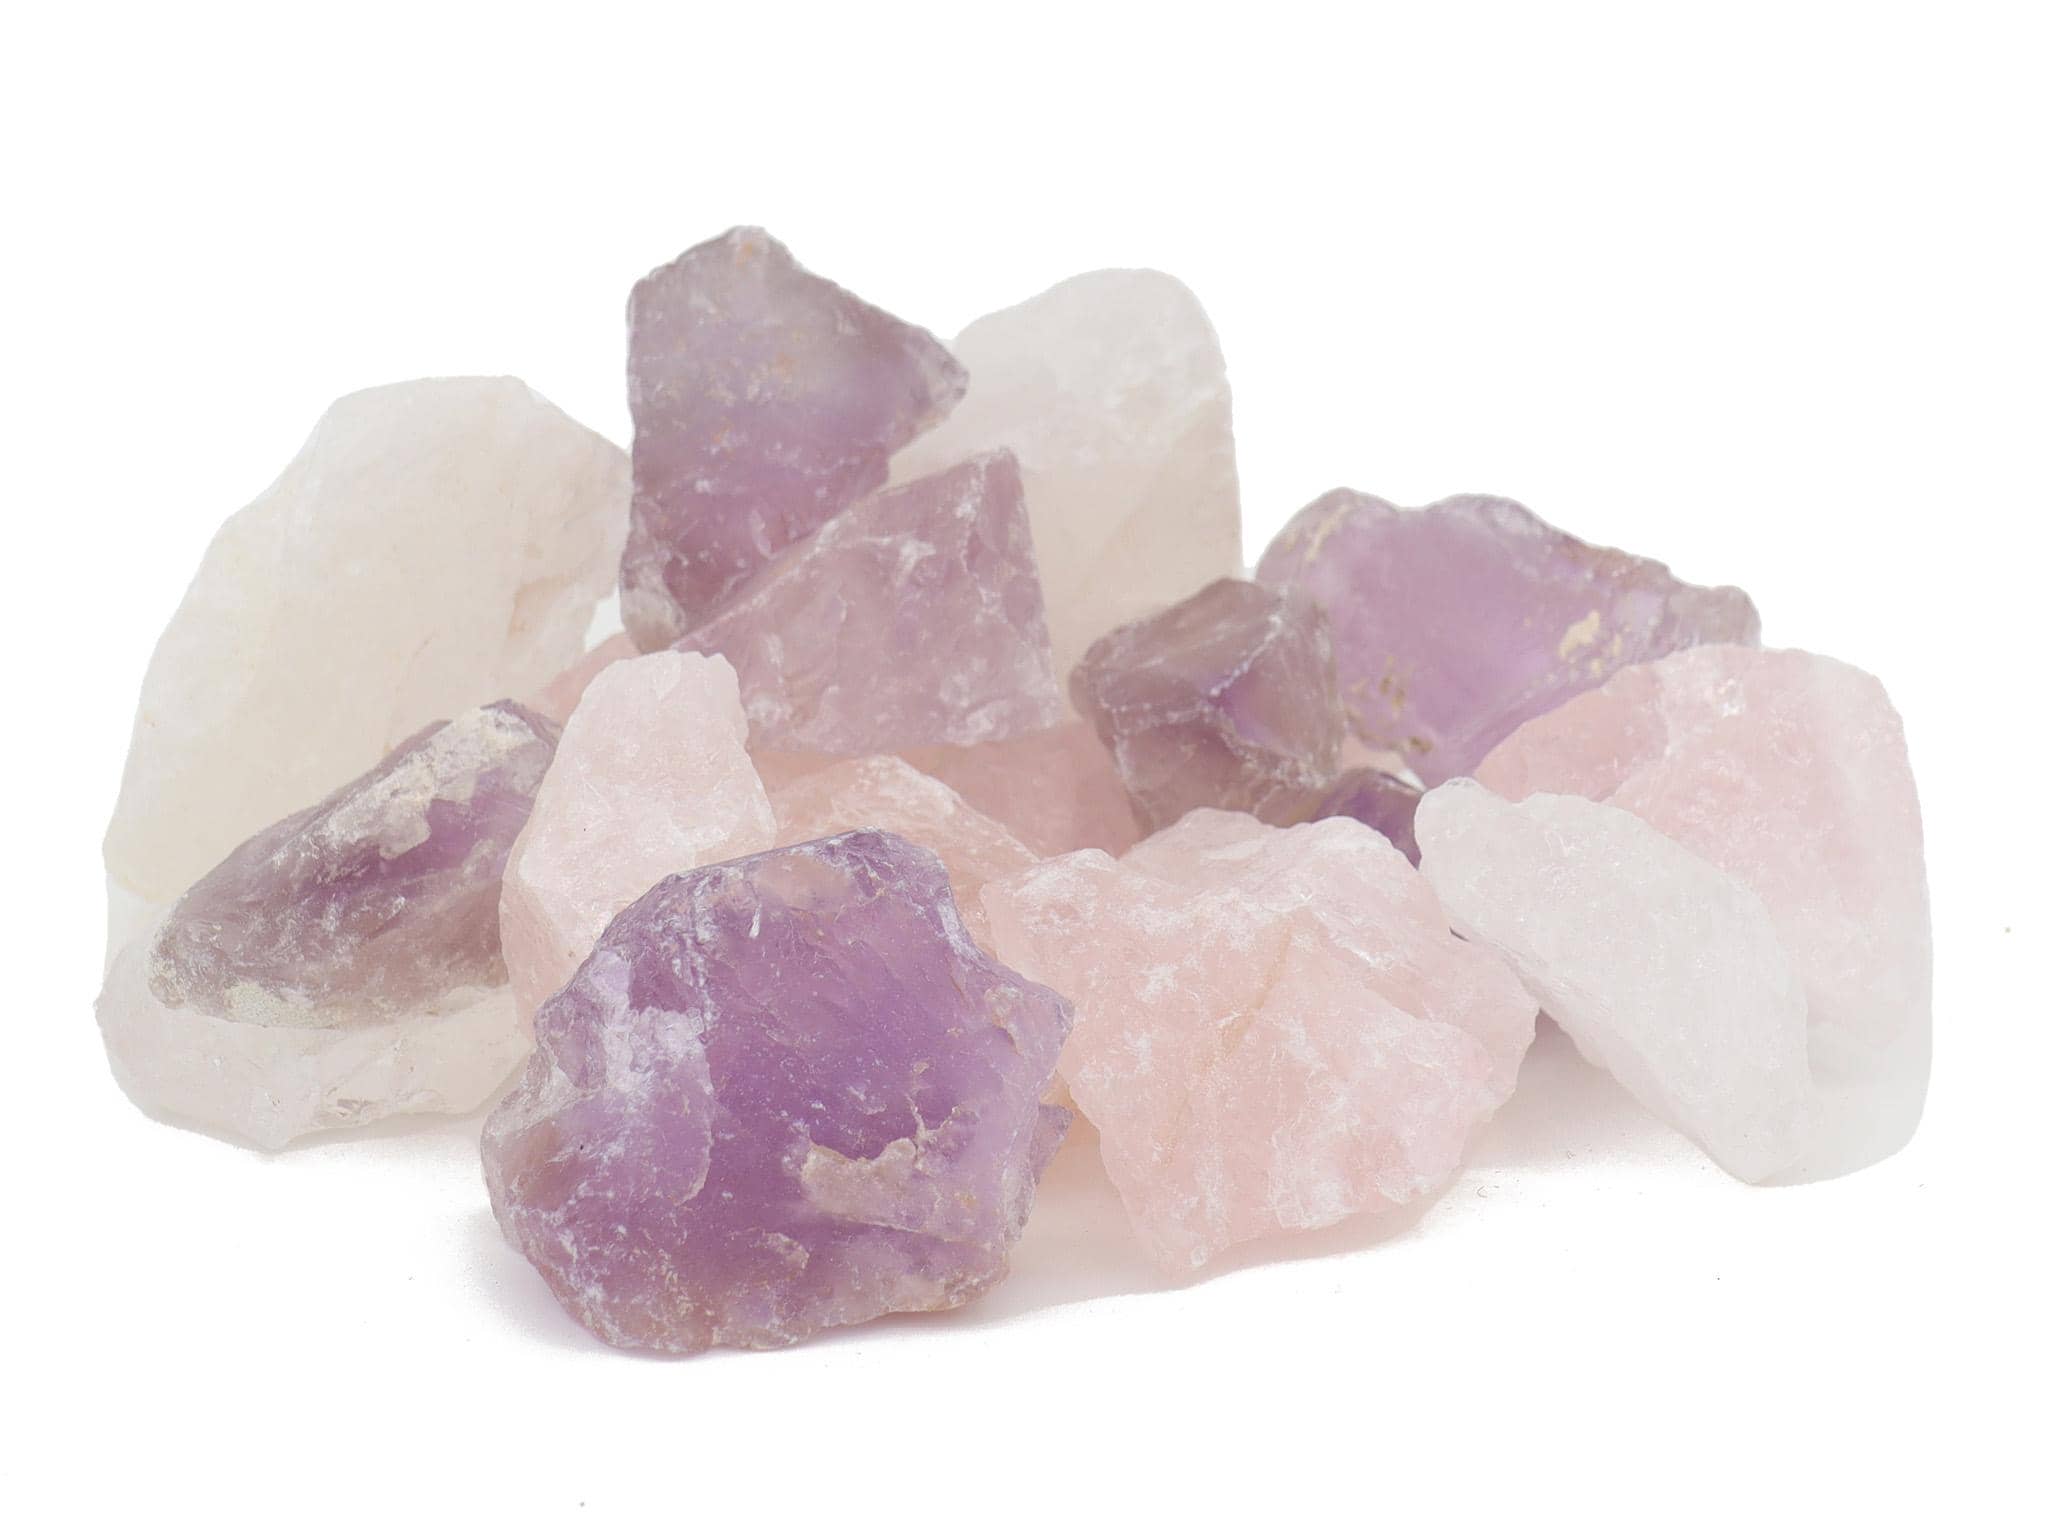 Wassersteine / Dekosteine Grundmischung mit Amethyst + Bergkristall + Rosenquarz (ca. 0,5 kg)  100% Natursteine